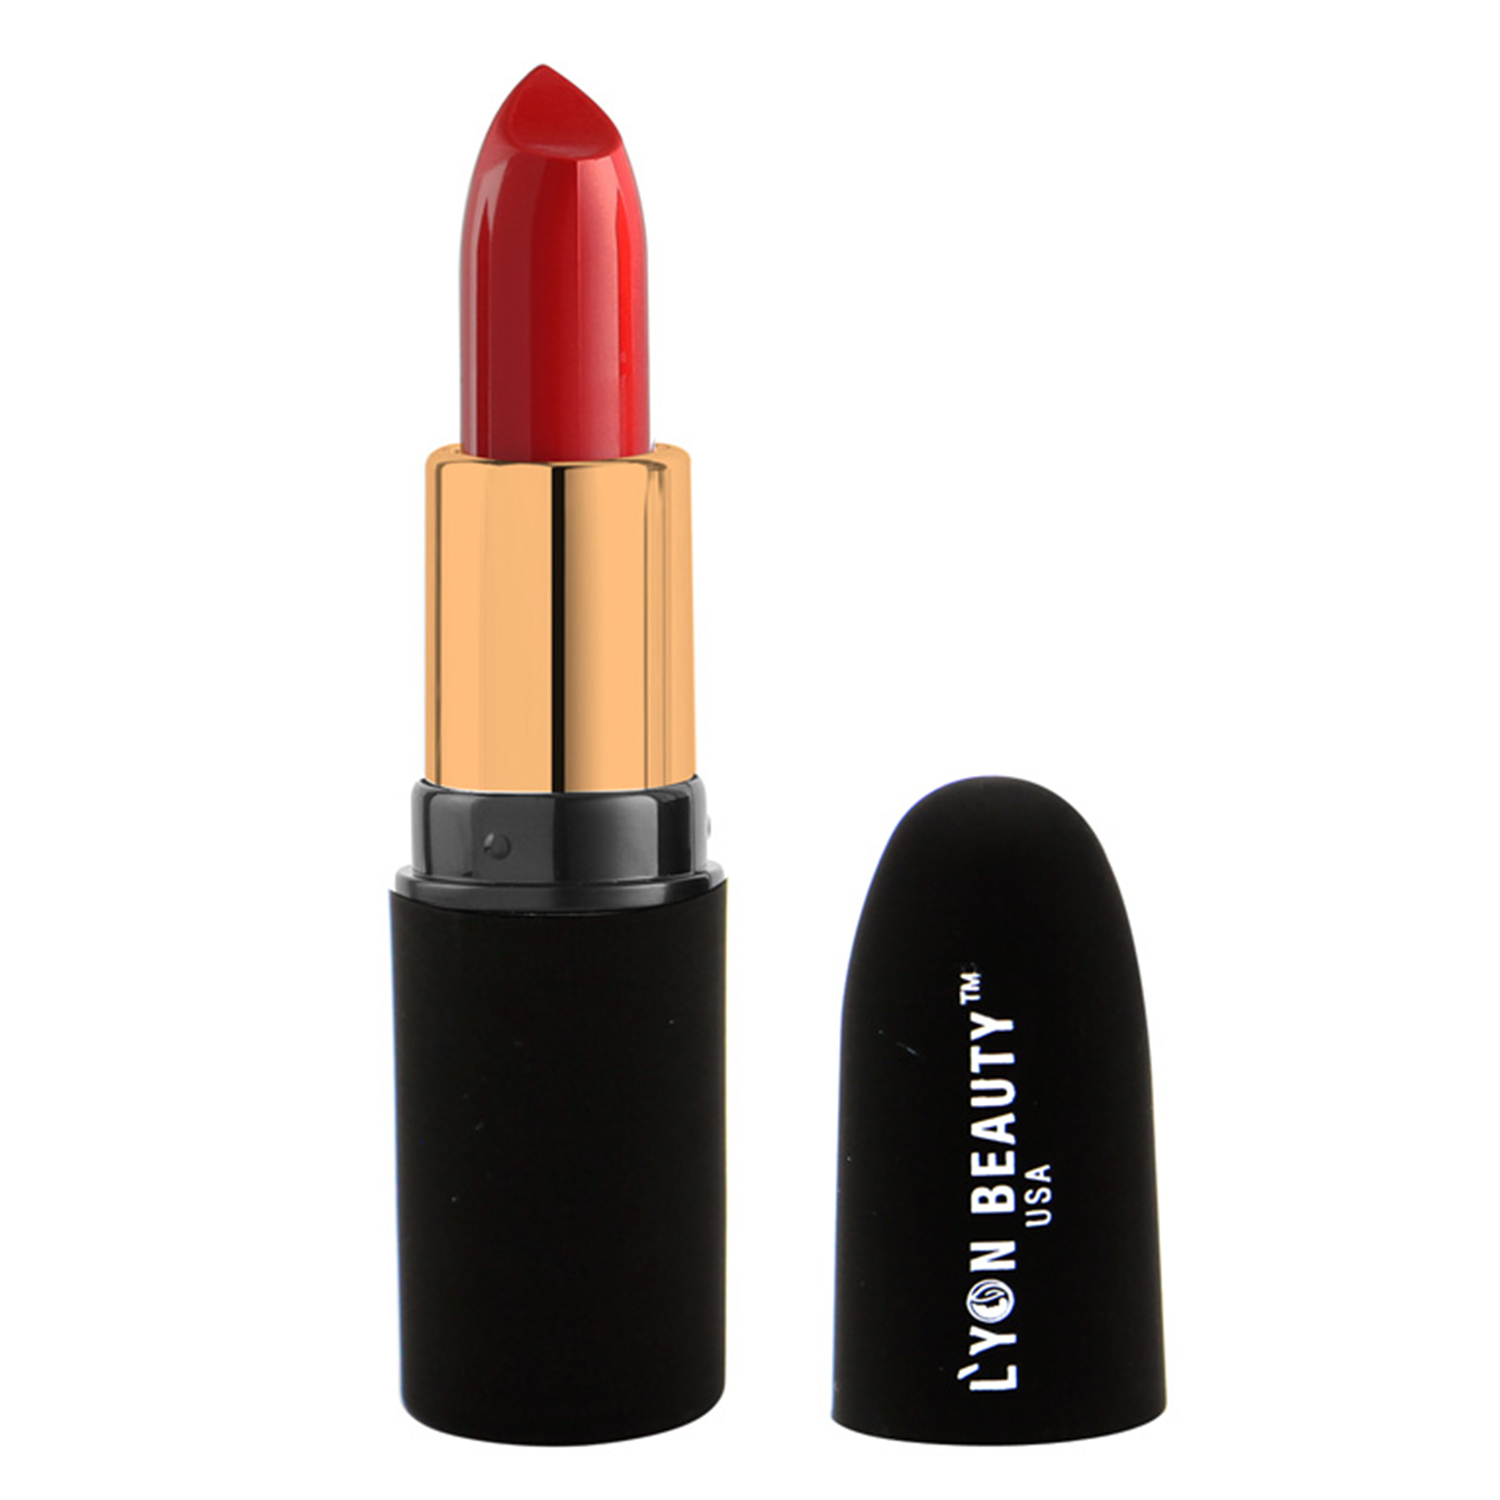 Lyon Beauty USA Pure Powder Matte Lipstick, 3.5gm-221 Hot Red